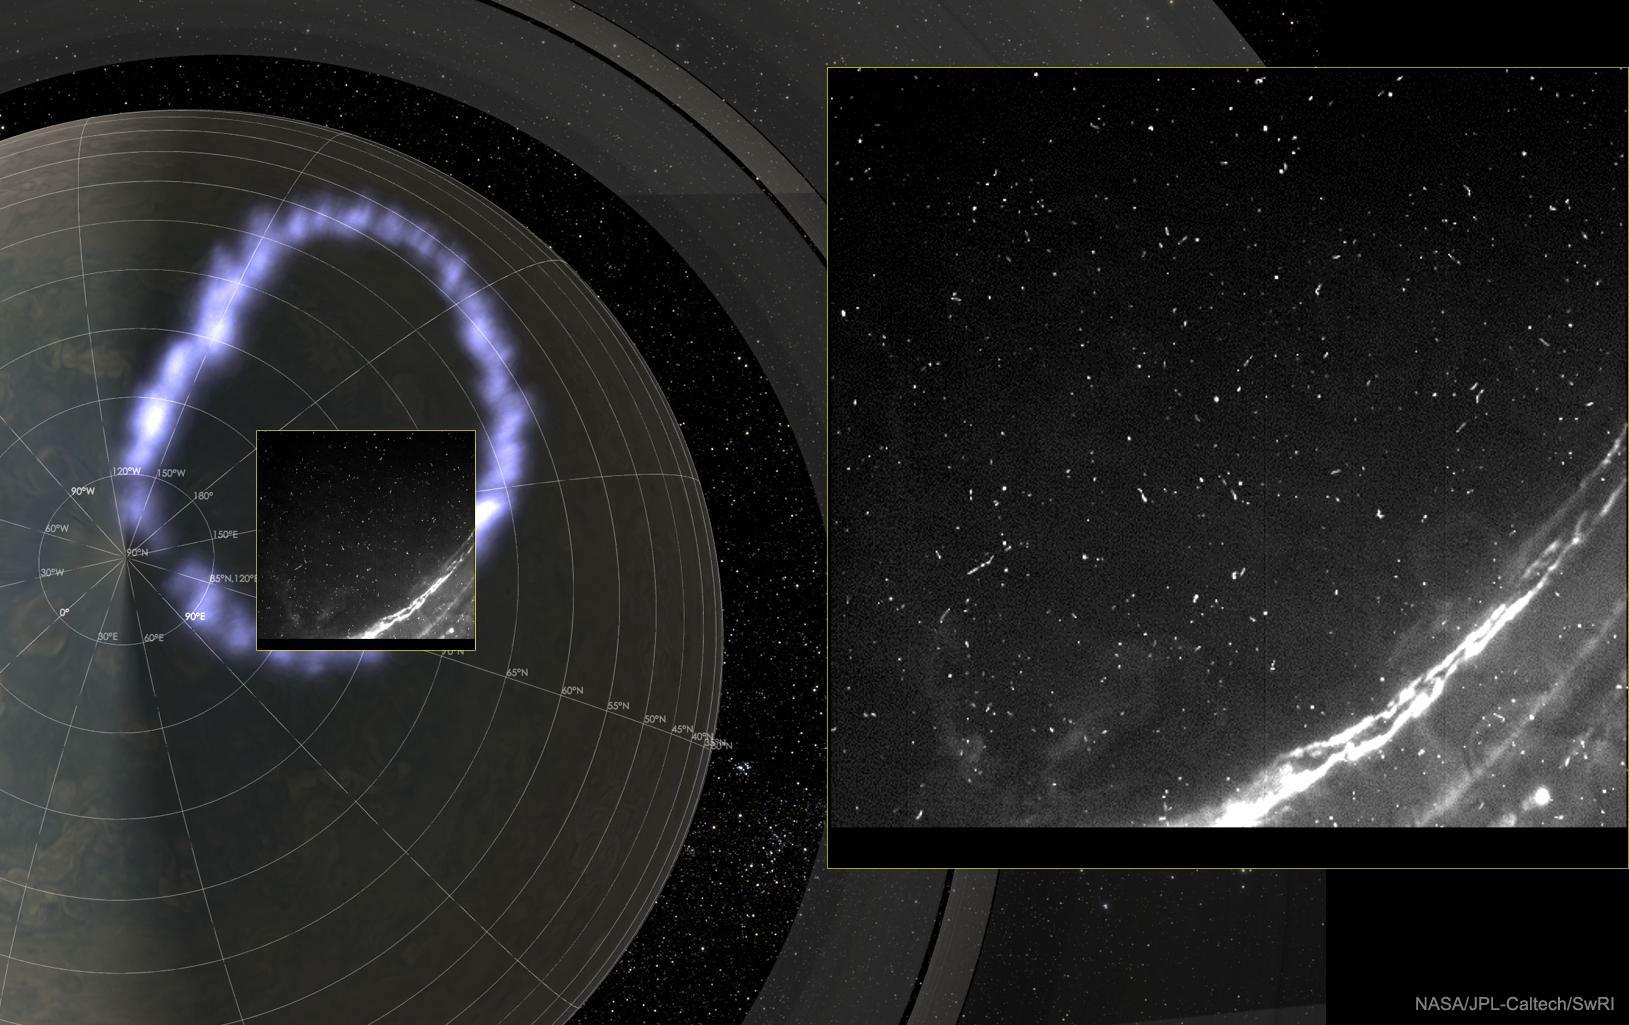 صورة تُظهر الشفق القُطبيّ الشماليّ بيضويّ الشكل لكوكب المُشتري وبضعة نقاط وخطوط ساطعة. هناك صورة مُدرجة على اليمين تُظهر لمعان برق المشتري عن كثب.